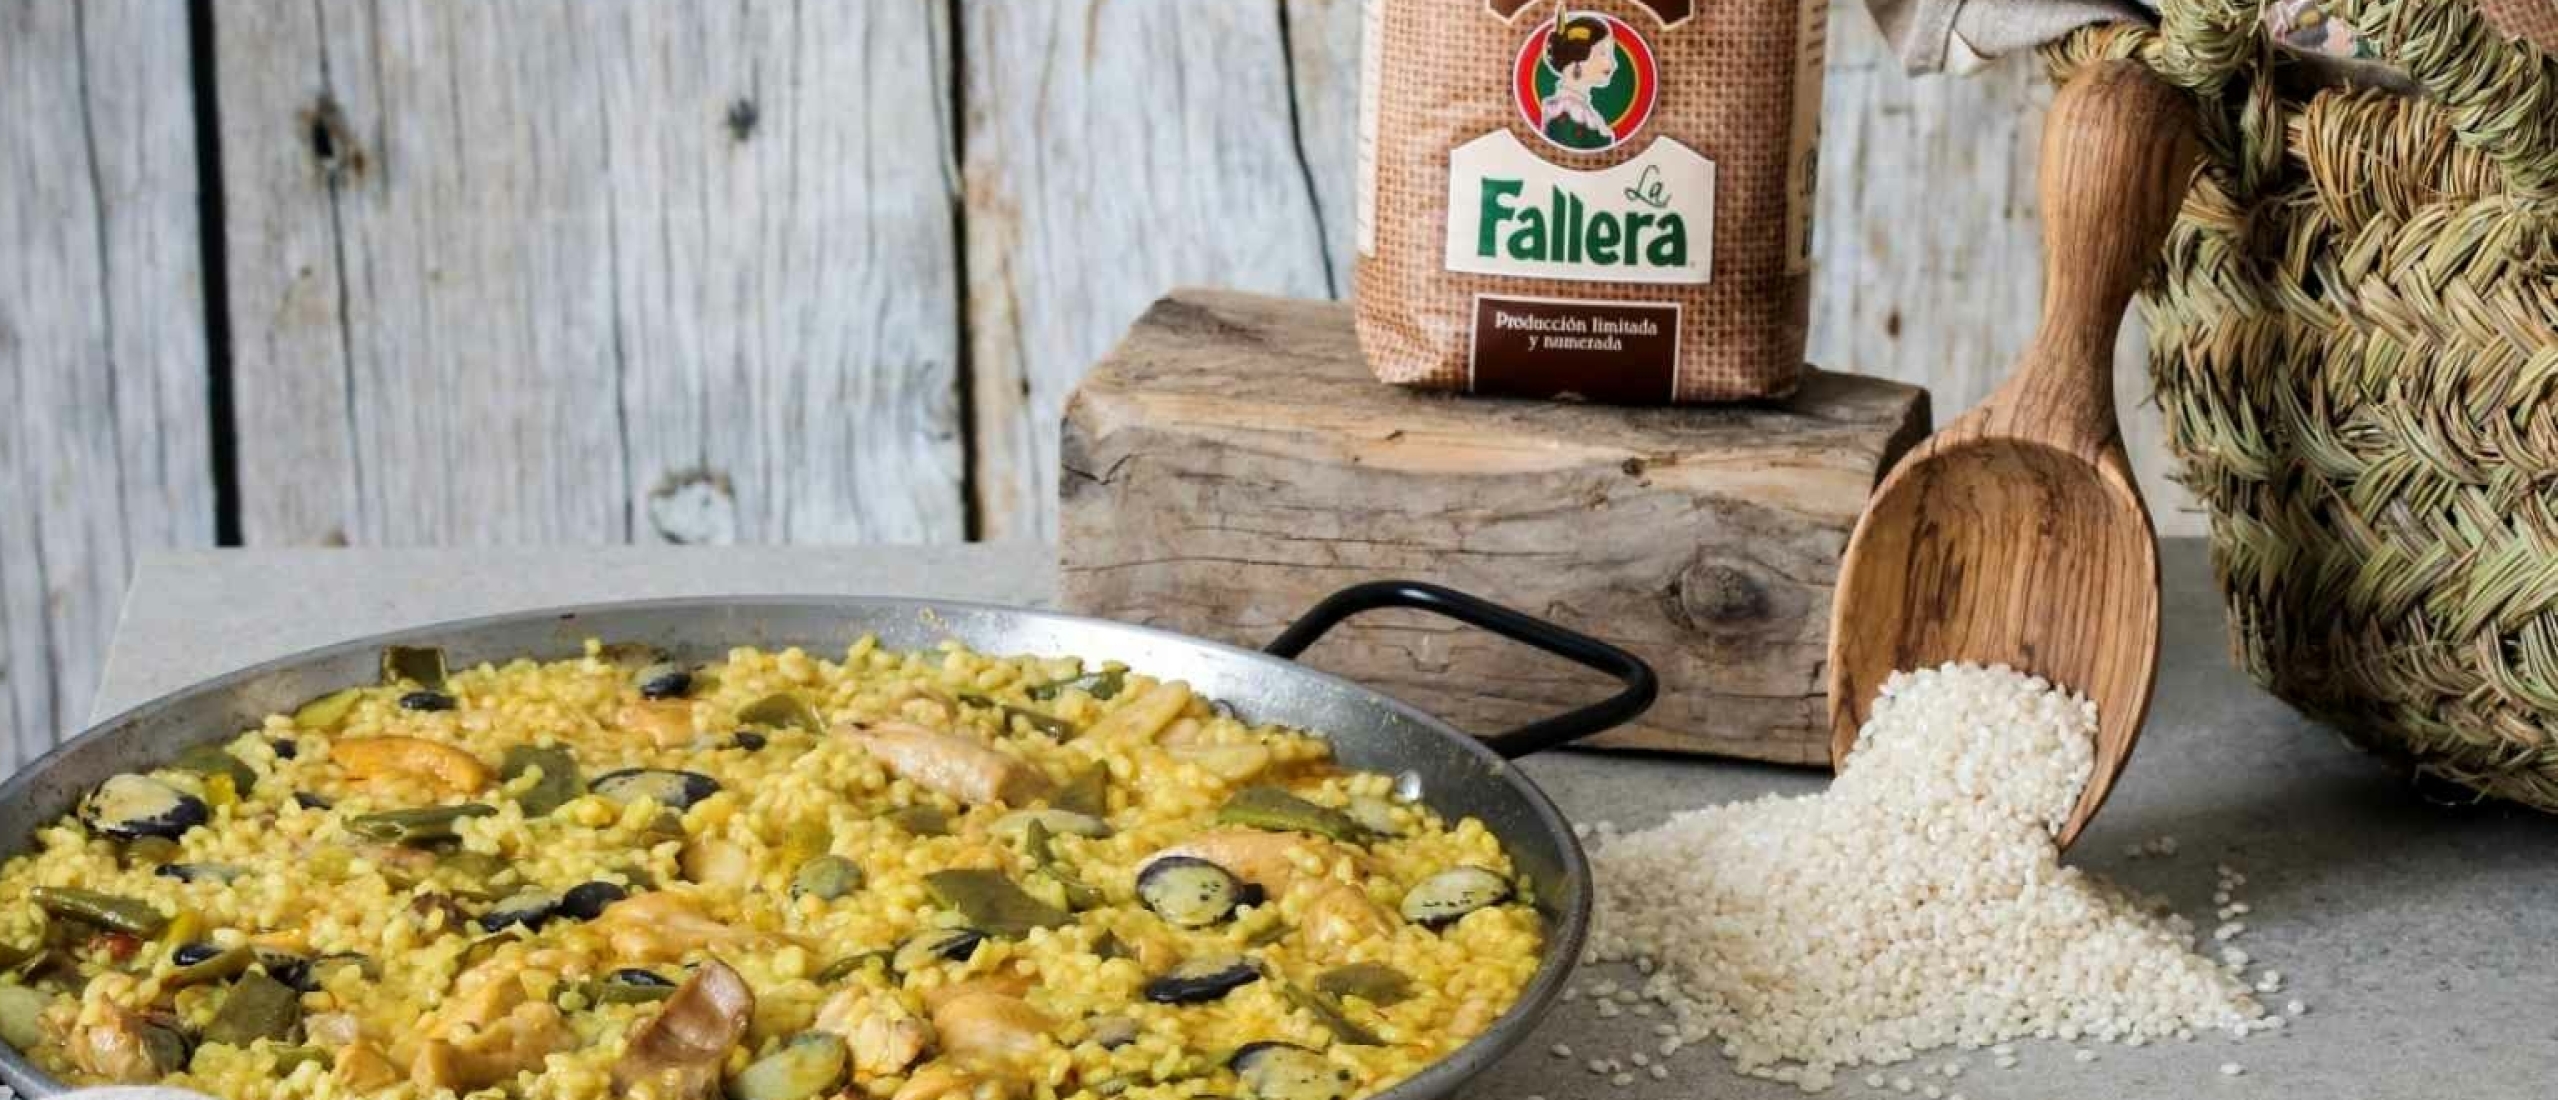 traditionele ingrediënten voor paella